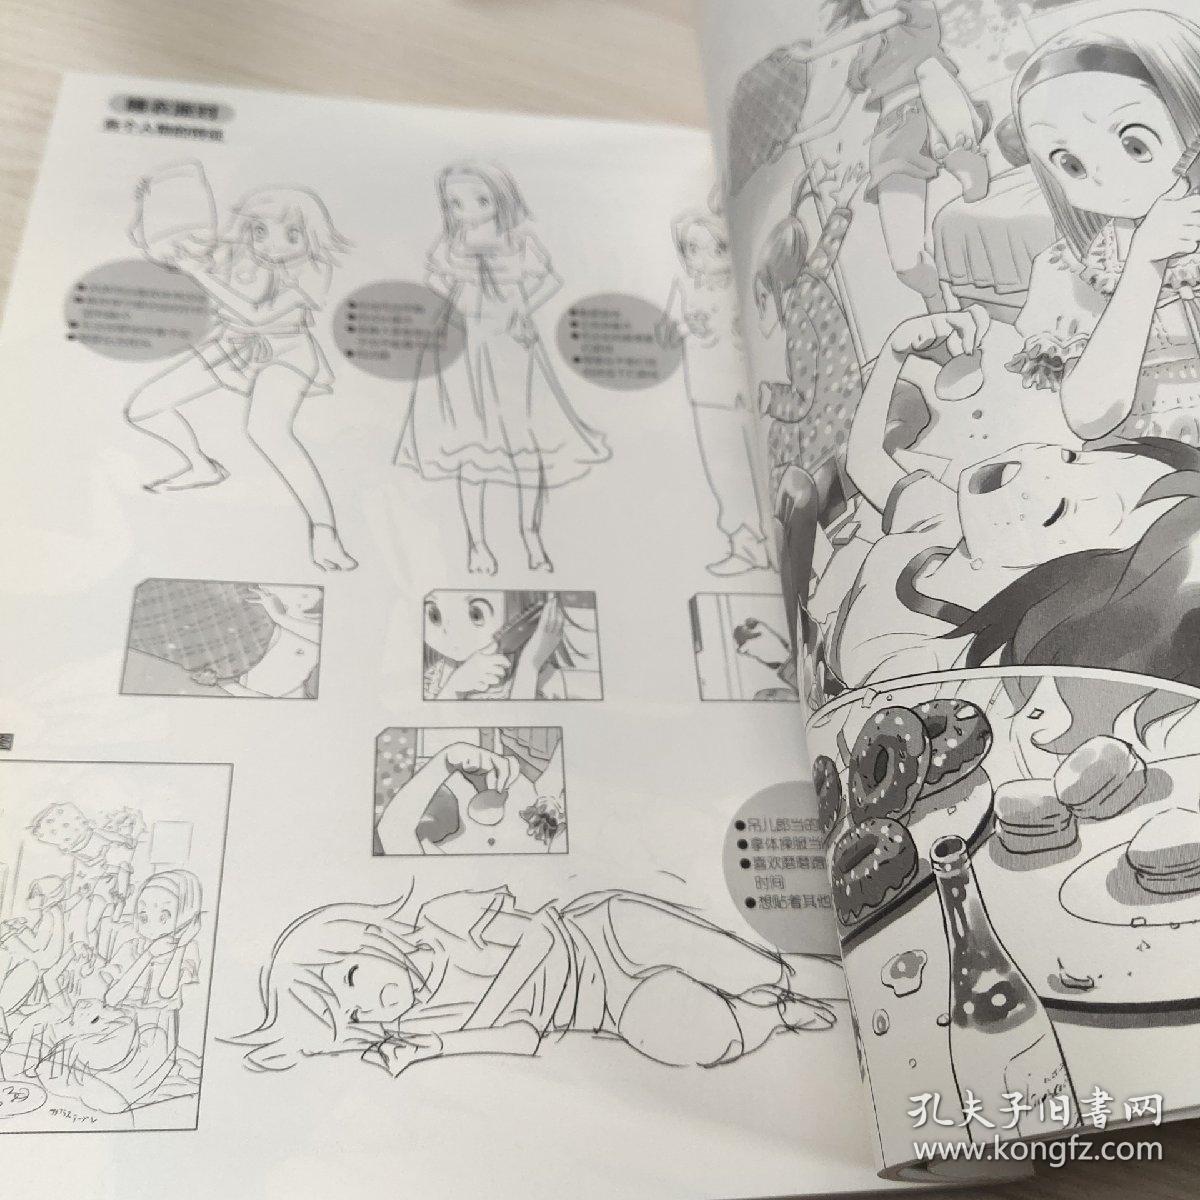 日本漫画大师讲座19：萌系萝莉美少女基础画法